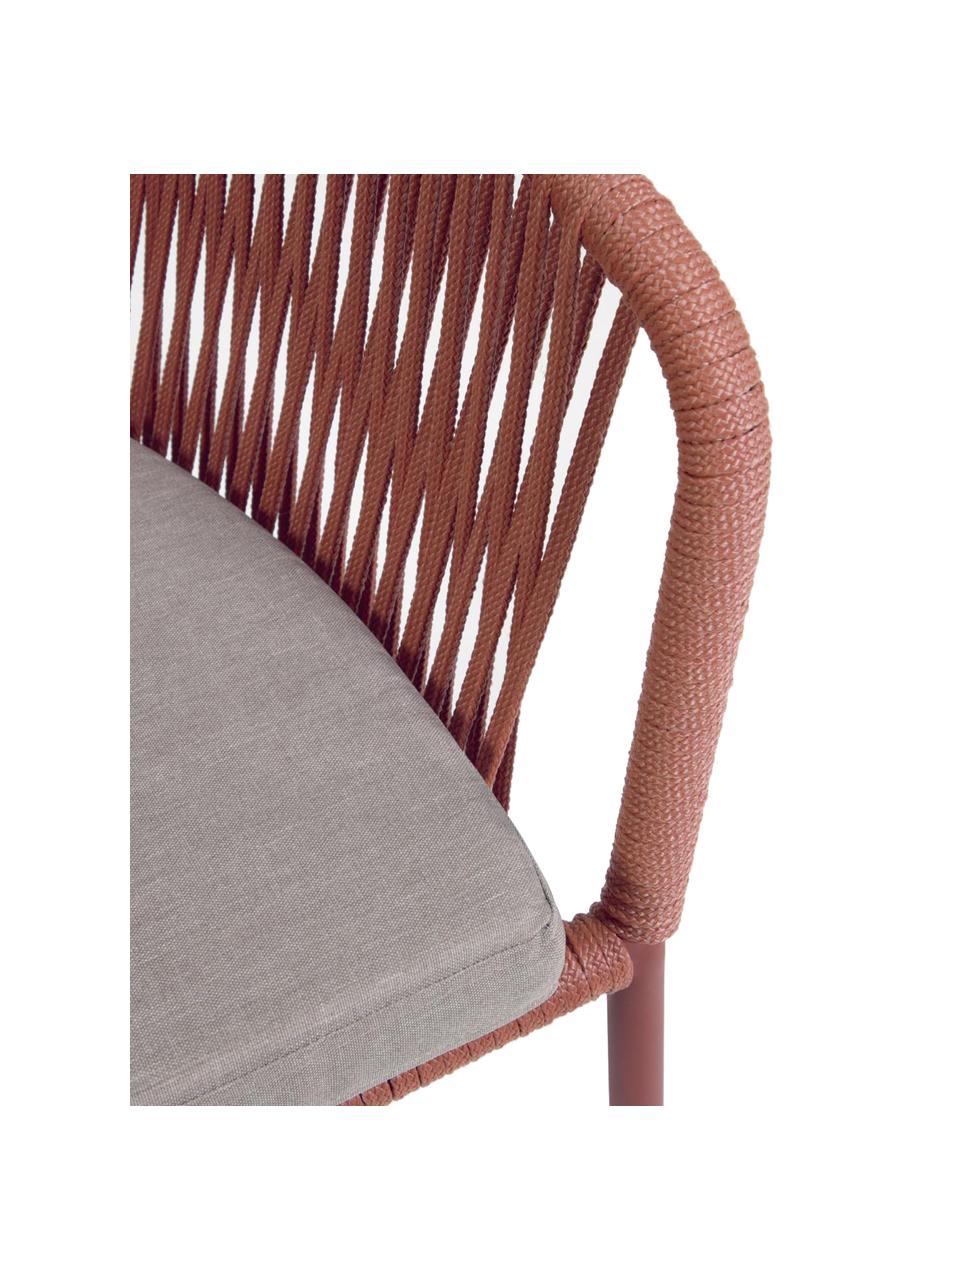 Krzesło ogrodowe Yanet, Stelaż: metal, ocynkowany i lakie, Tapicerka: poliester, Terakota, S 56 x G 51 cm